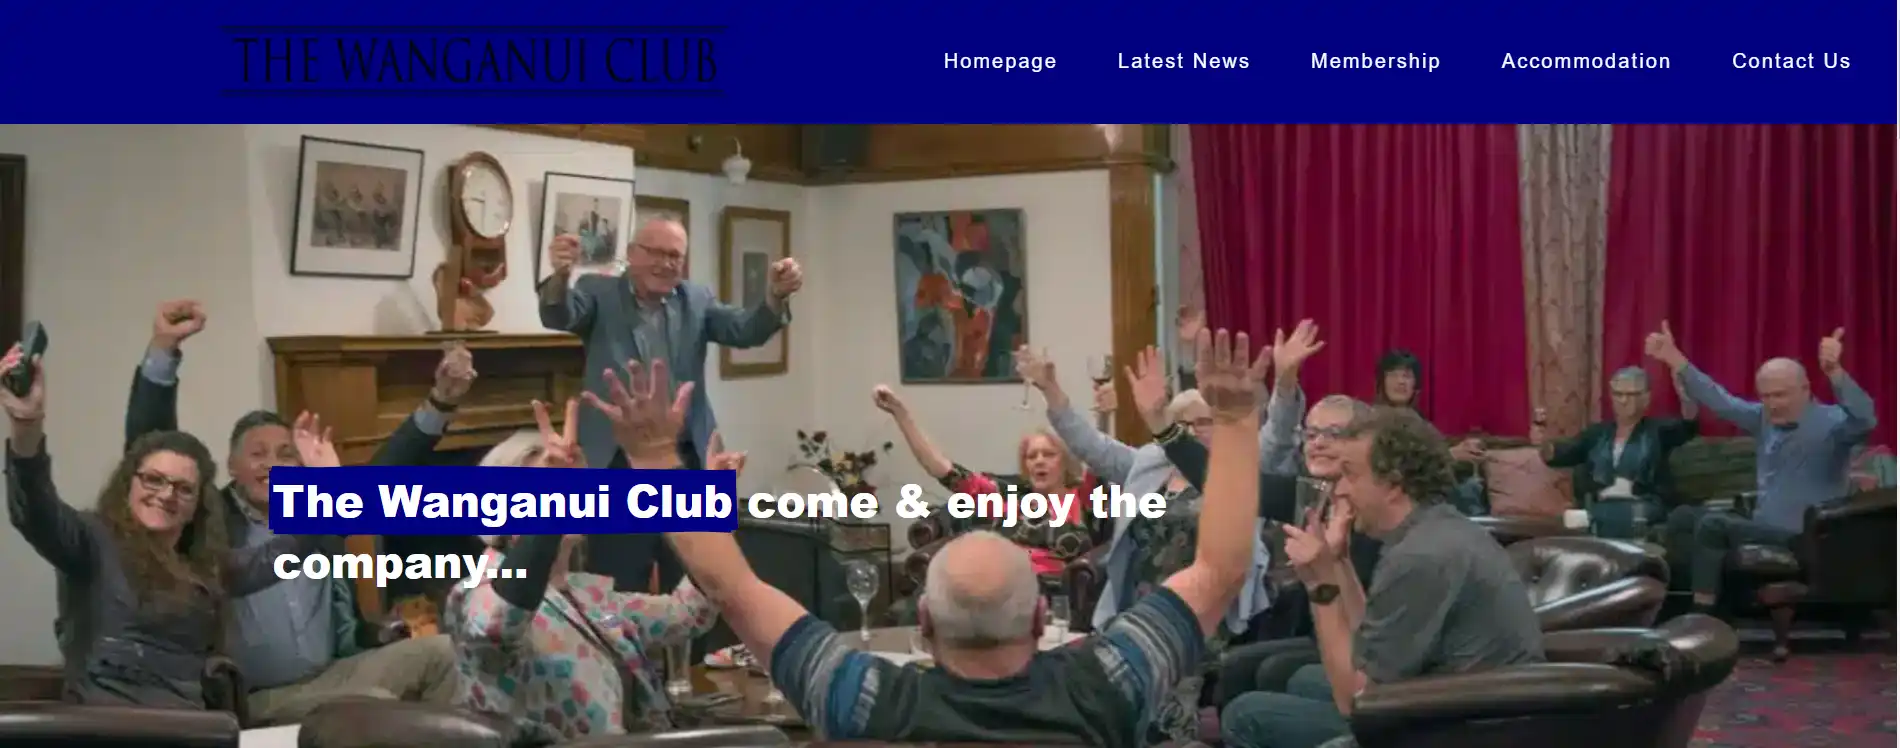 The Wanganui Club